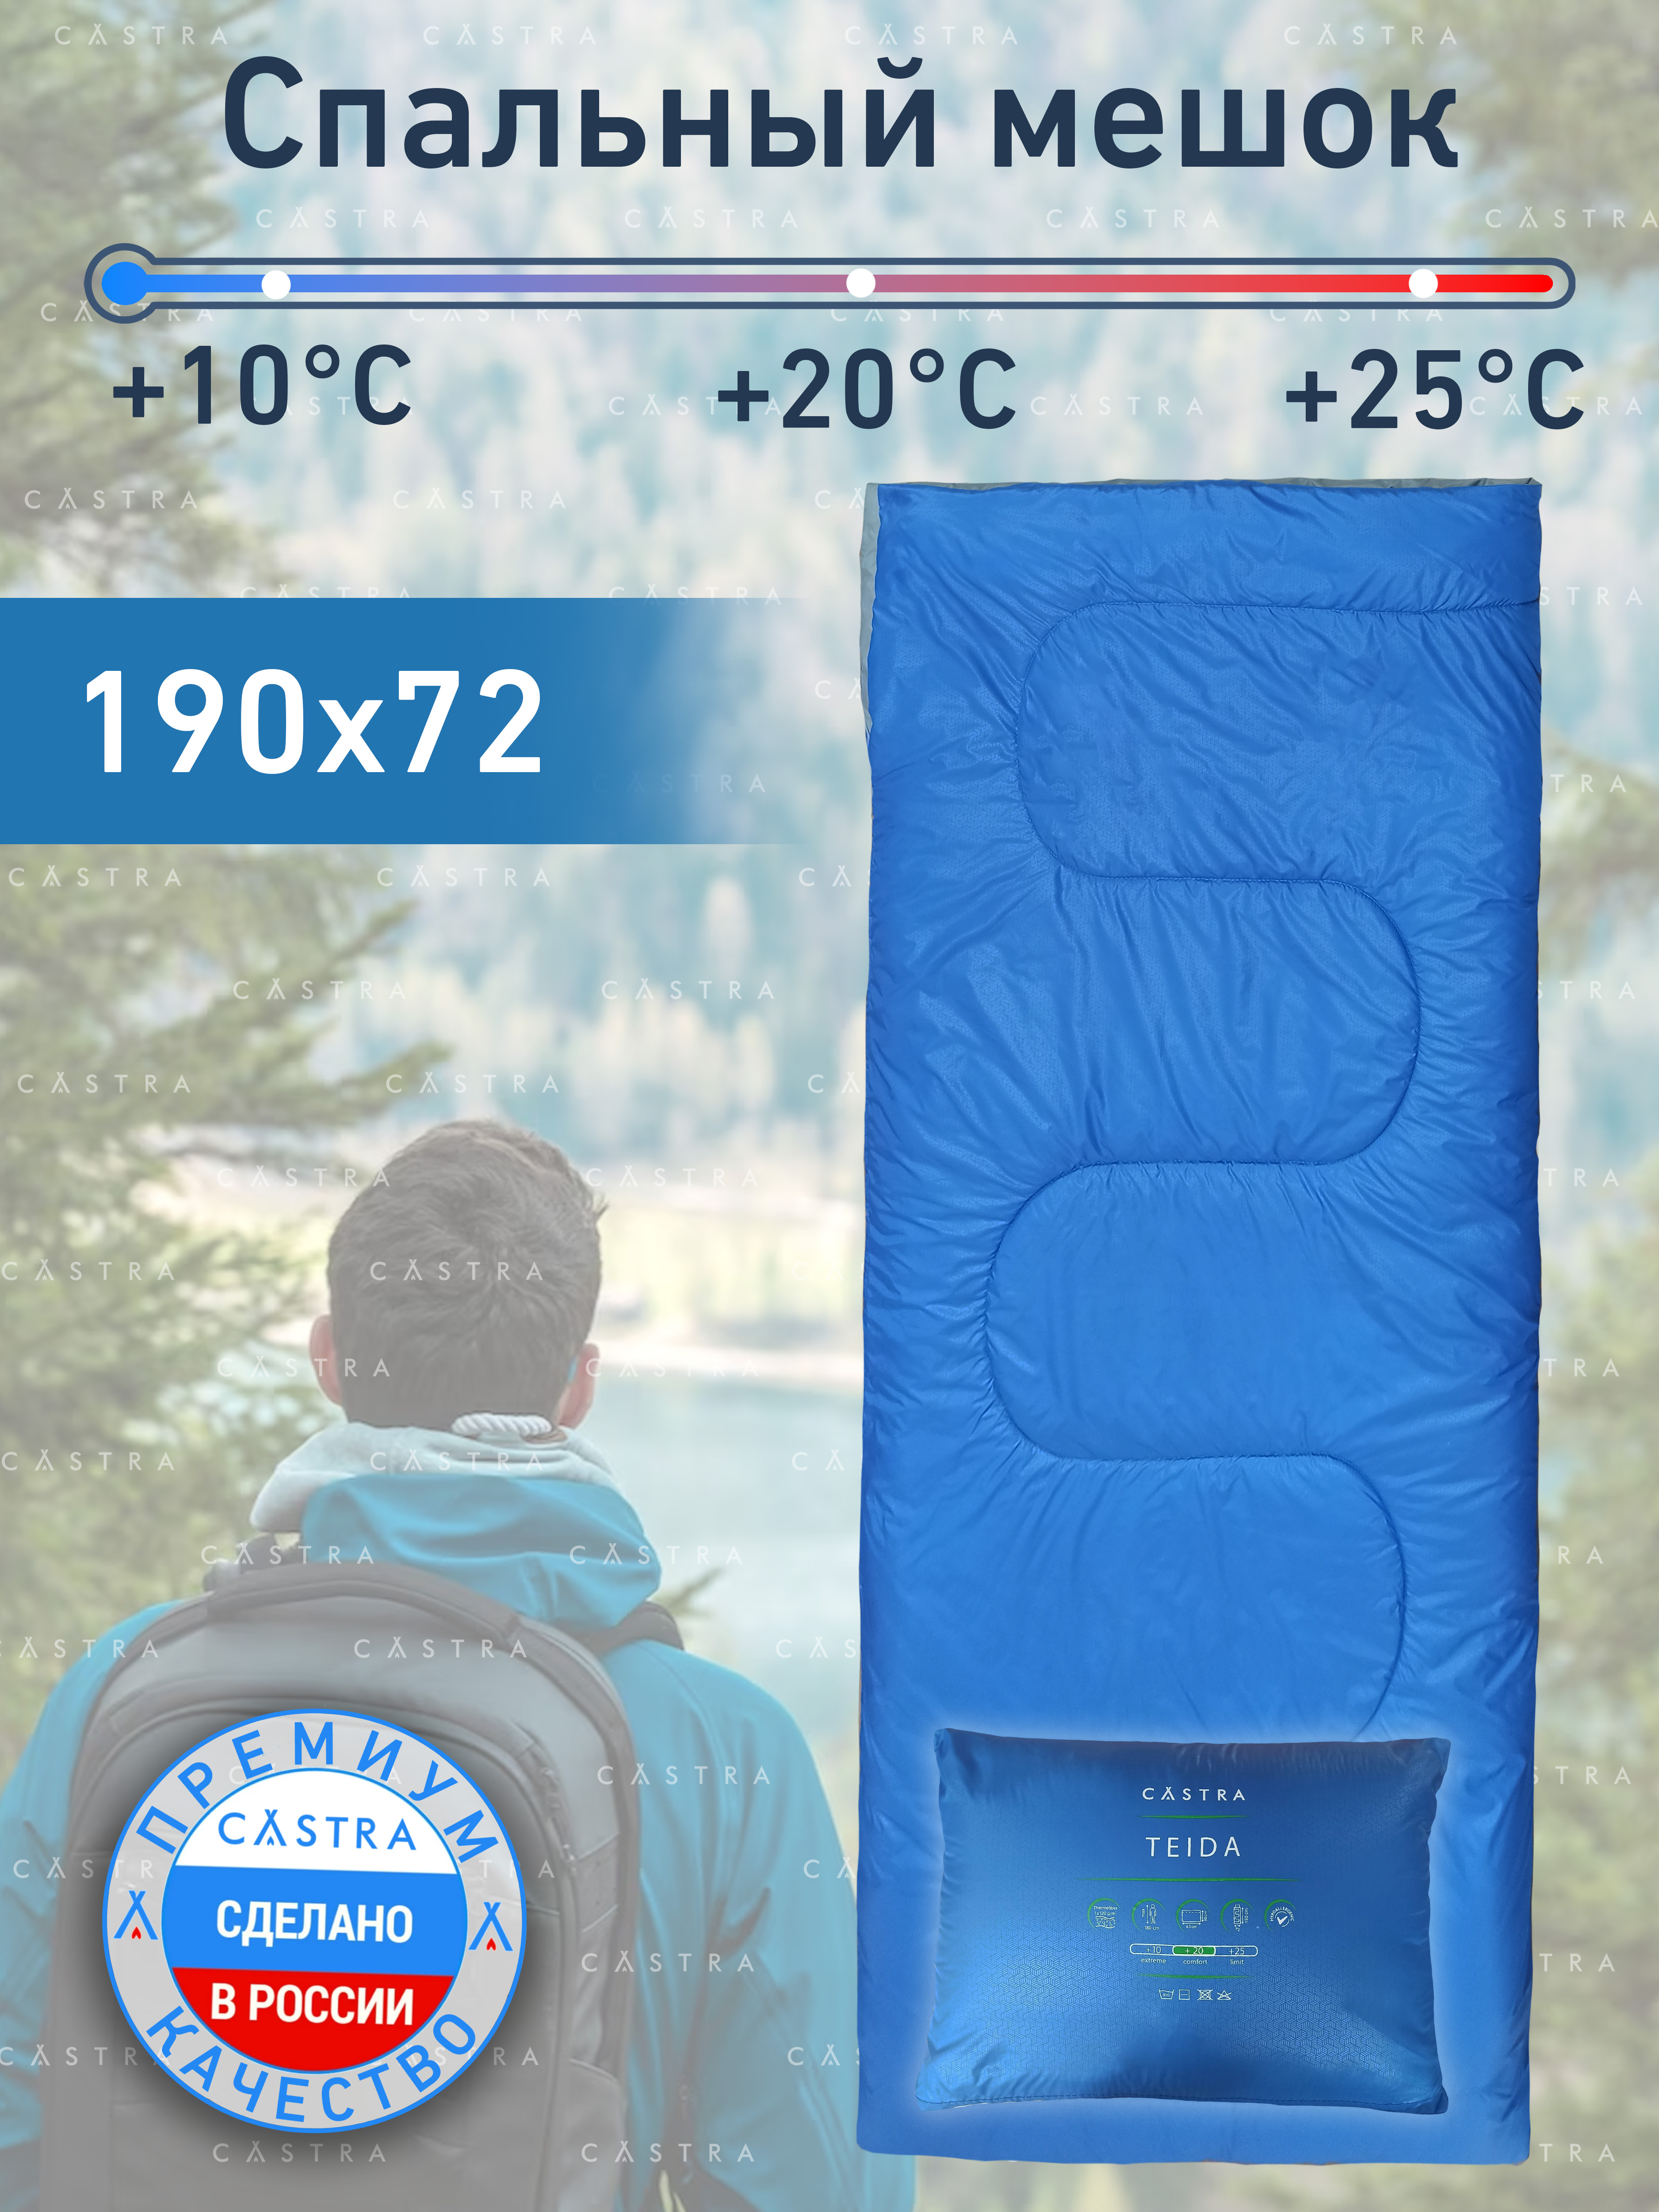 Спальный мешок CASTRA, Teida без молнии, синий, размер 190х72 см